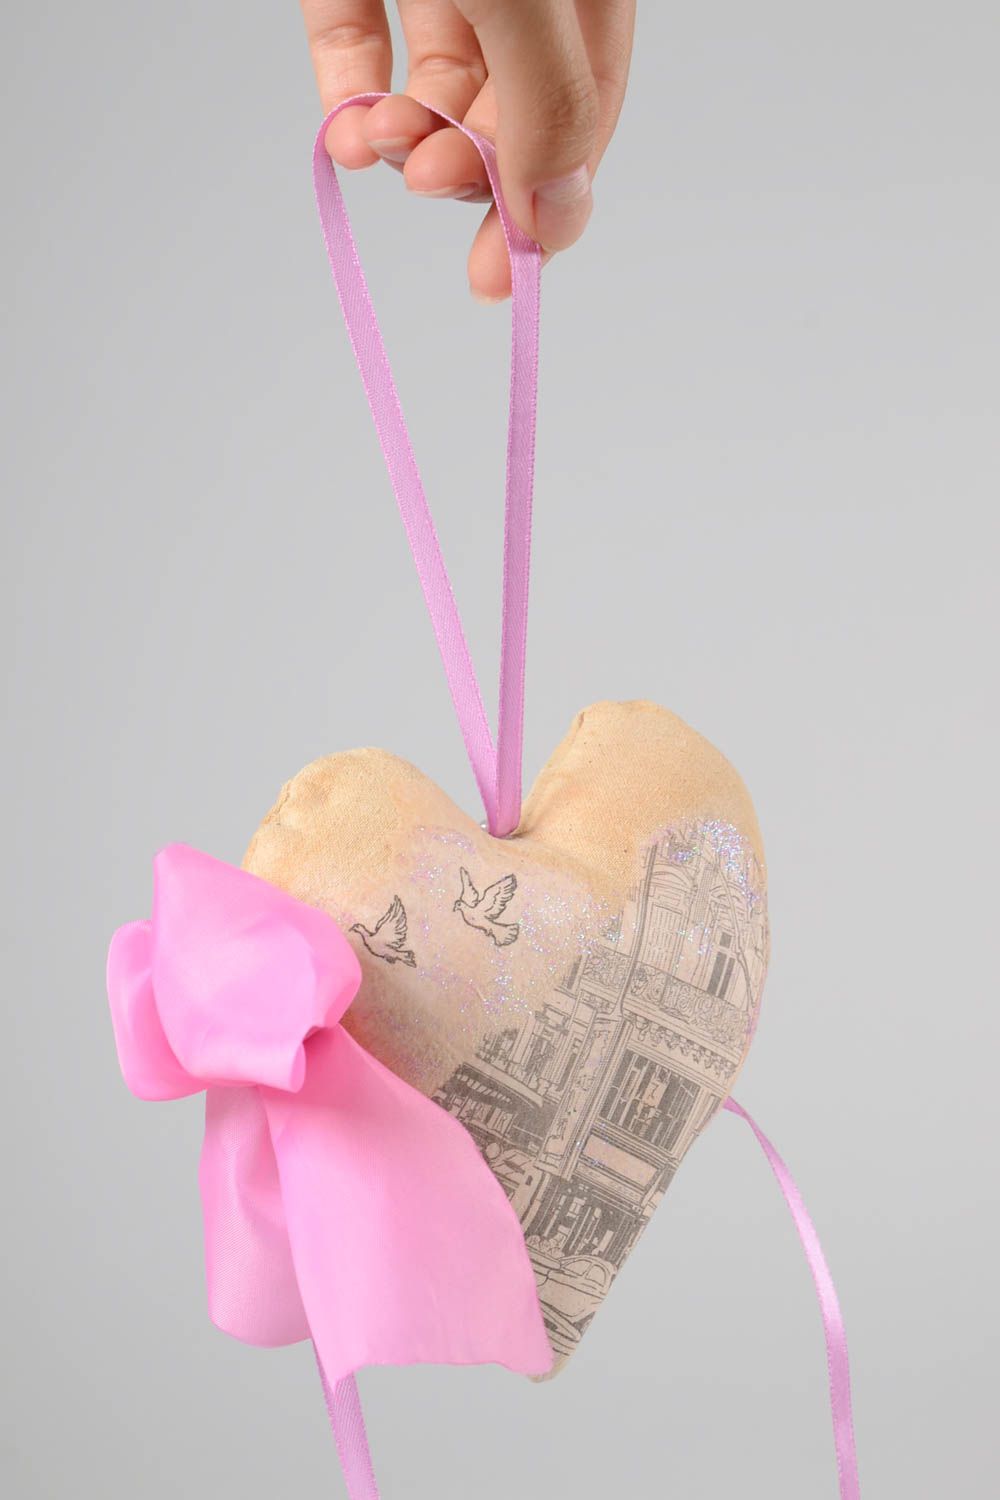 Игрушка ручной работы интерьерная игрушка интересный подарок сердечко город фото 3